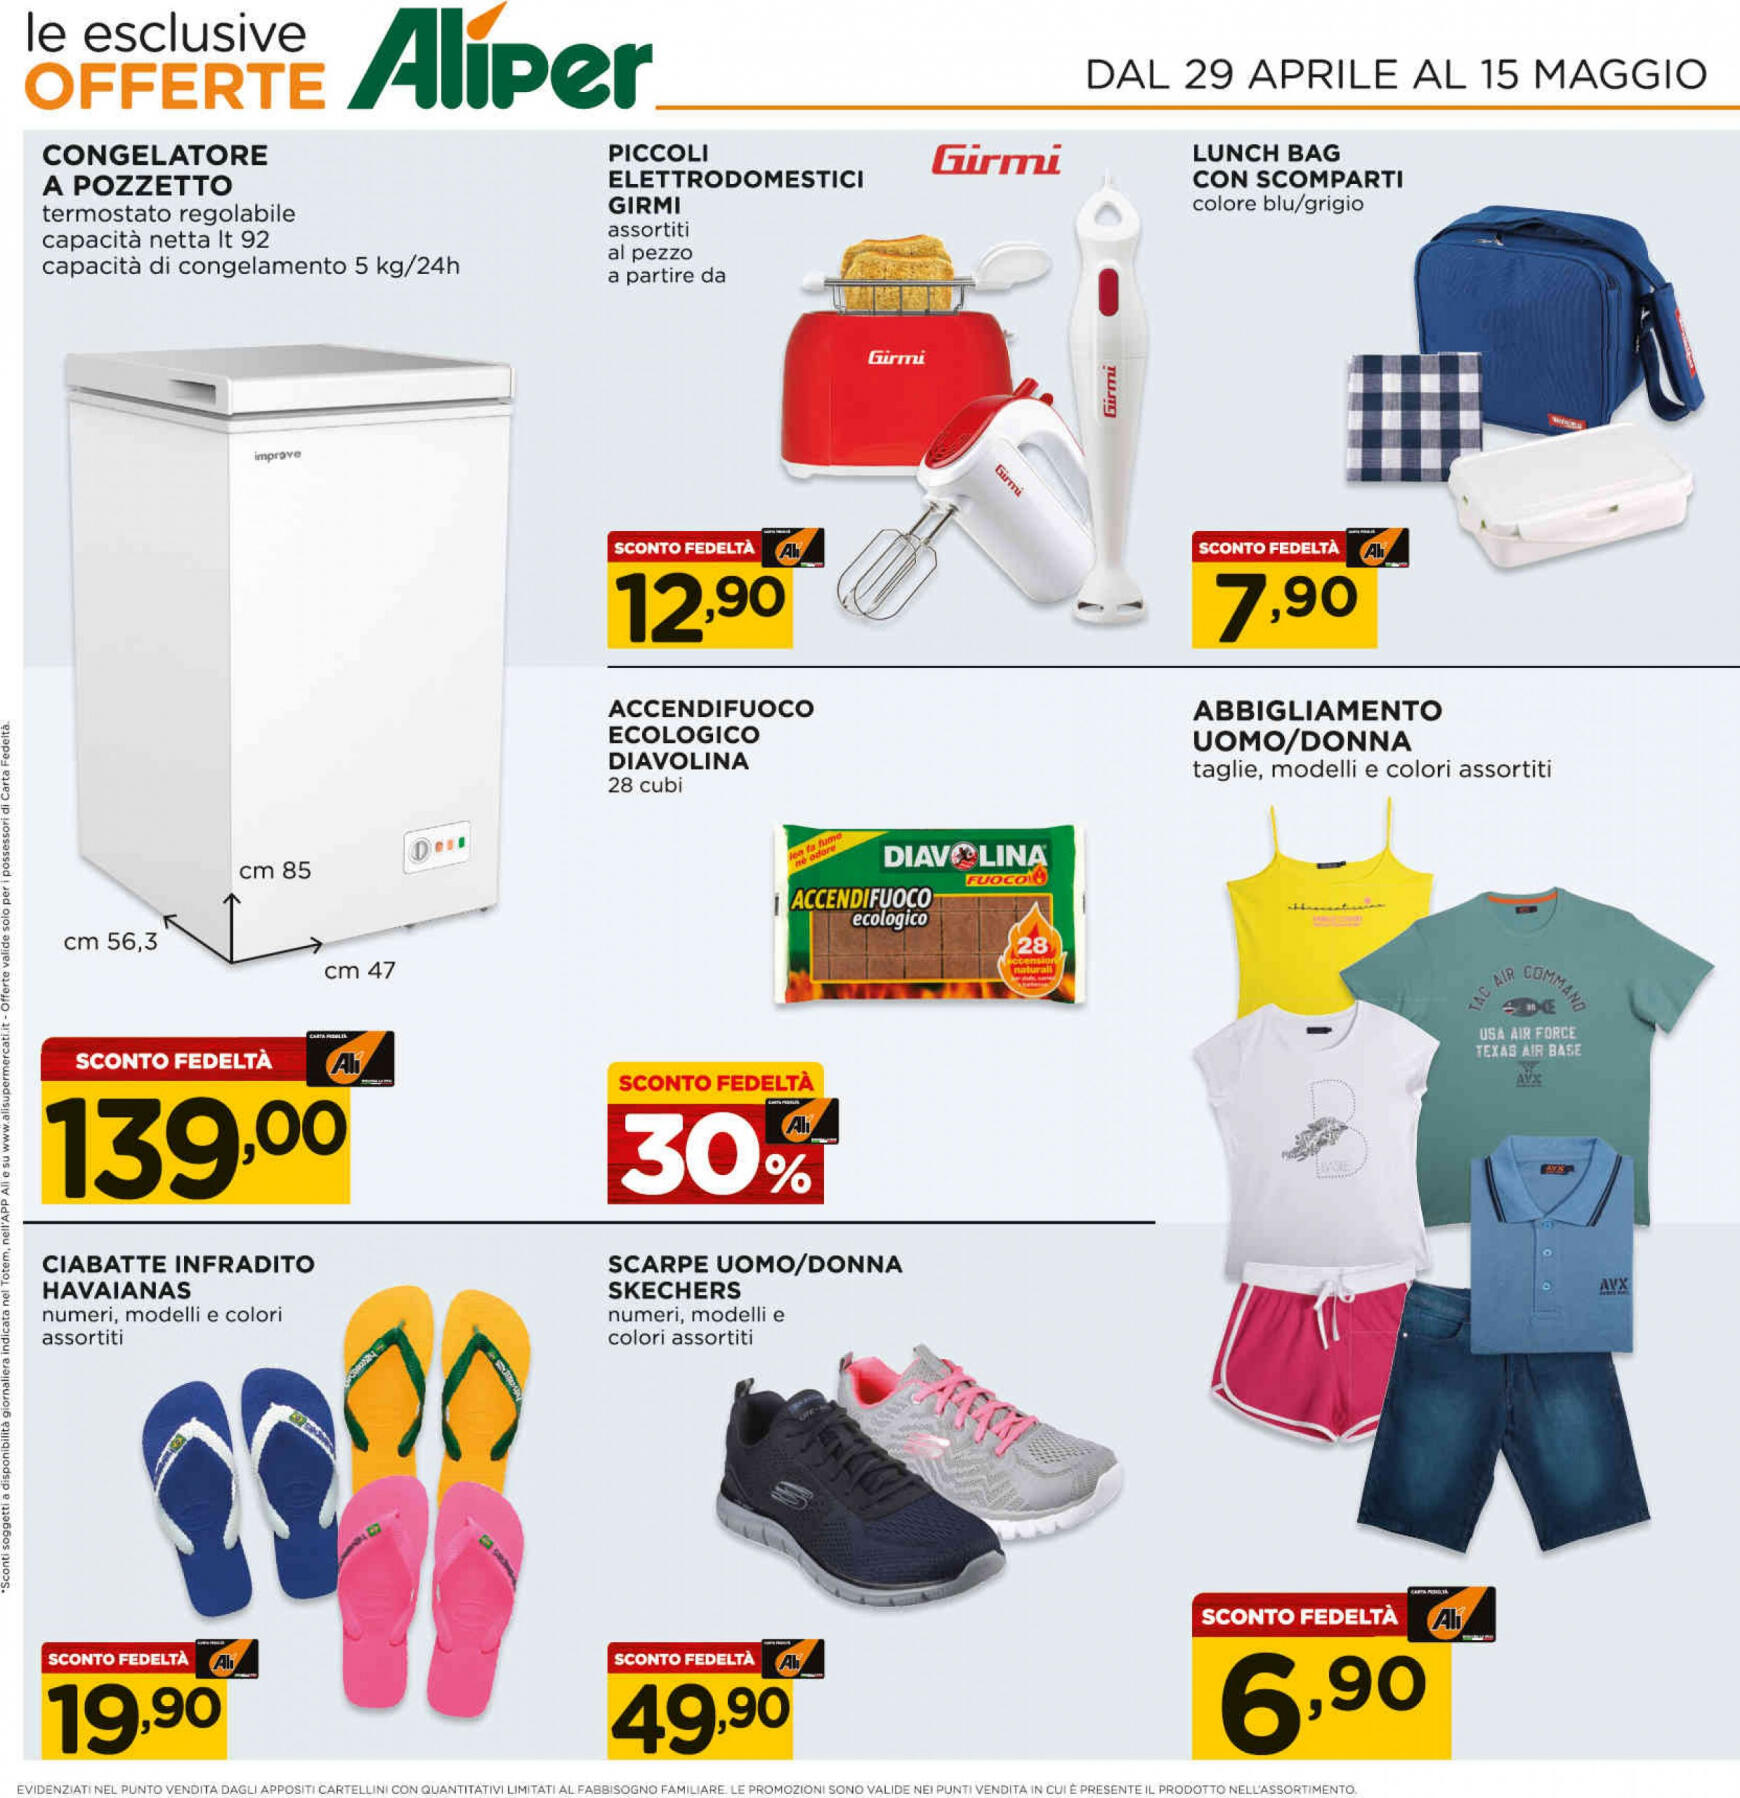 ali-aliper - Nuovo volantino Ali - Aliper - Prezzi bassi 29.04. - 15.05. - page: 19